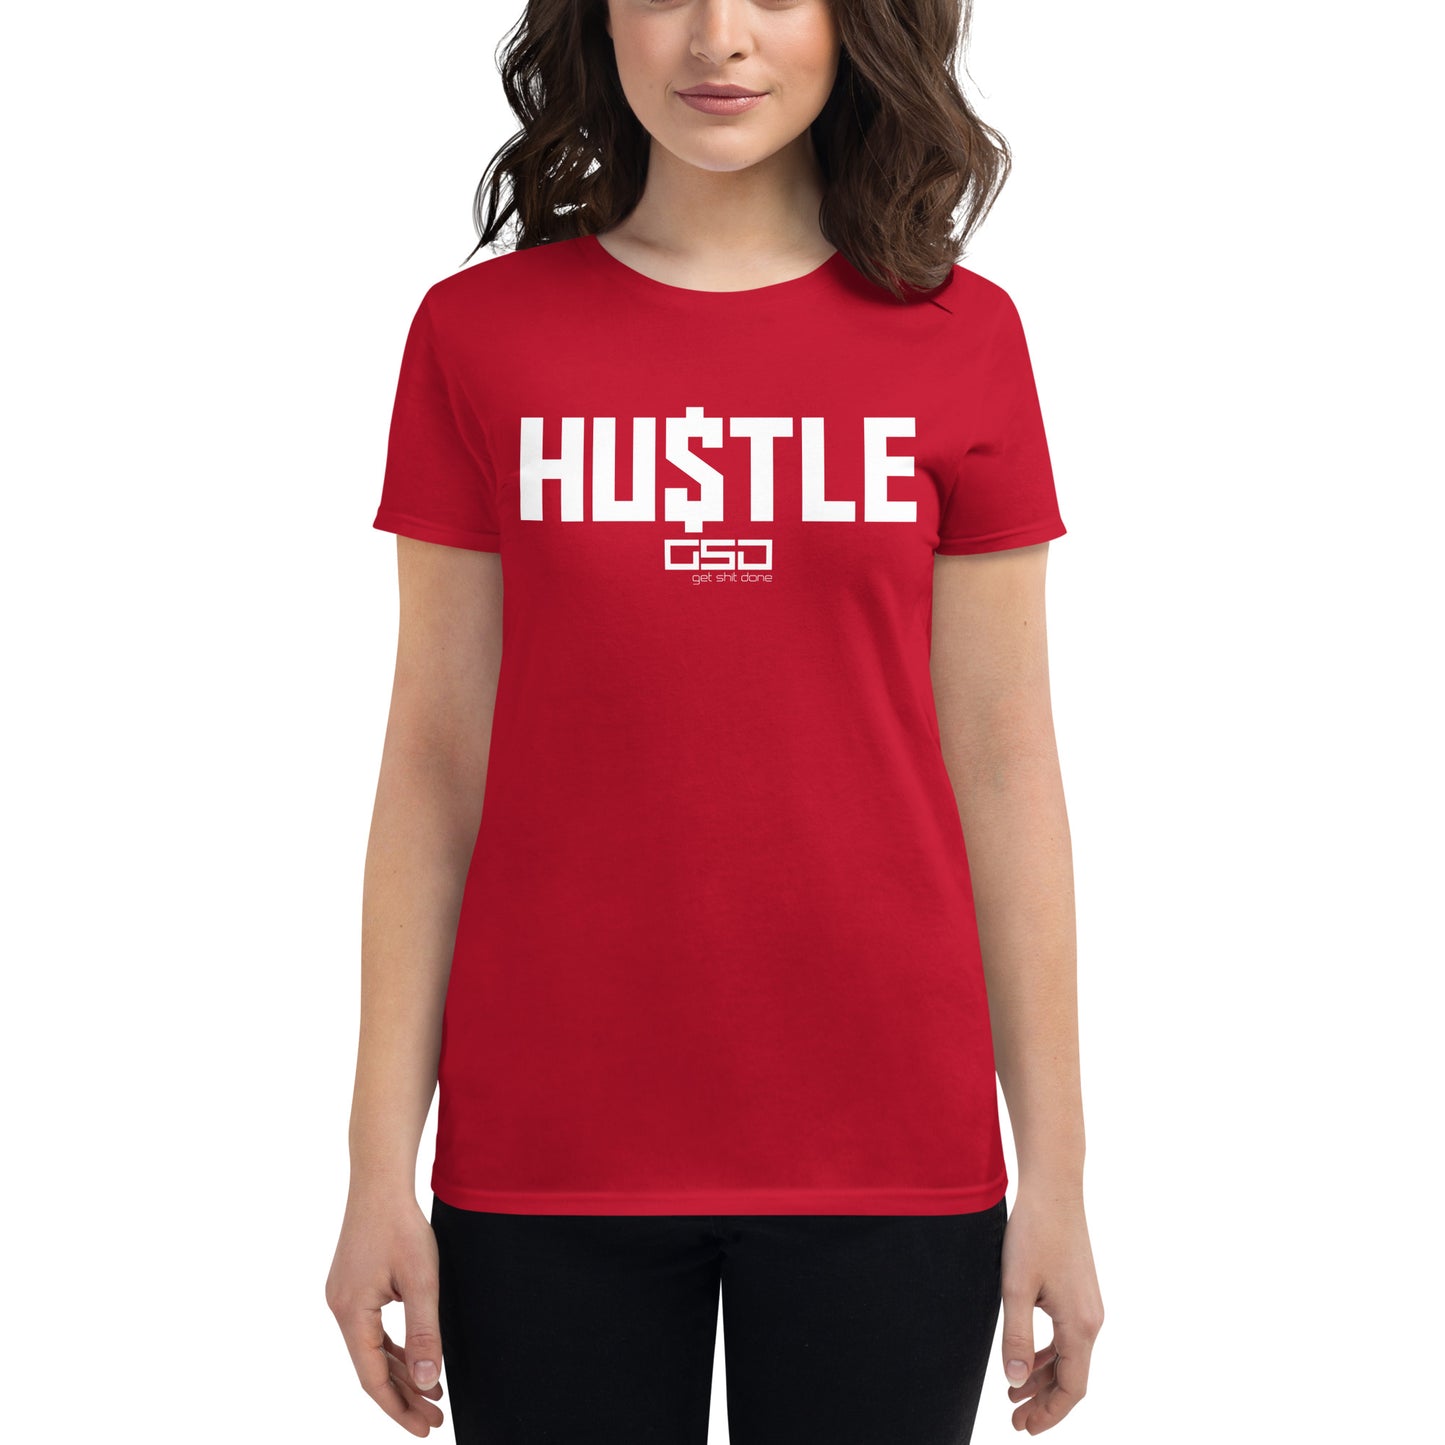 HU$TLE-Women's short sleeve t-shirt